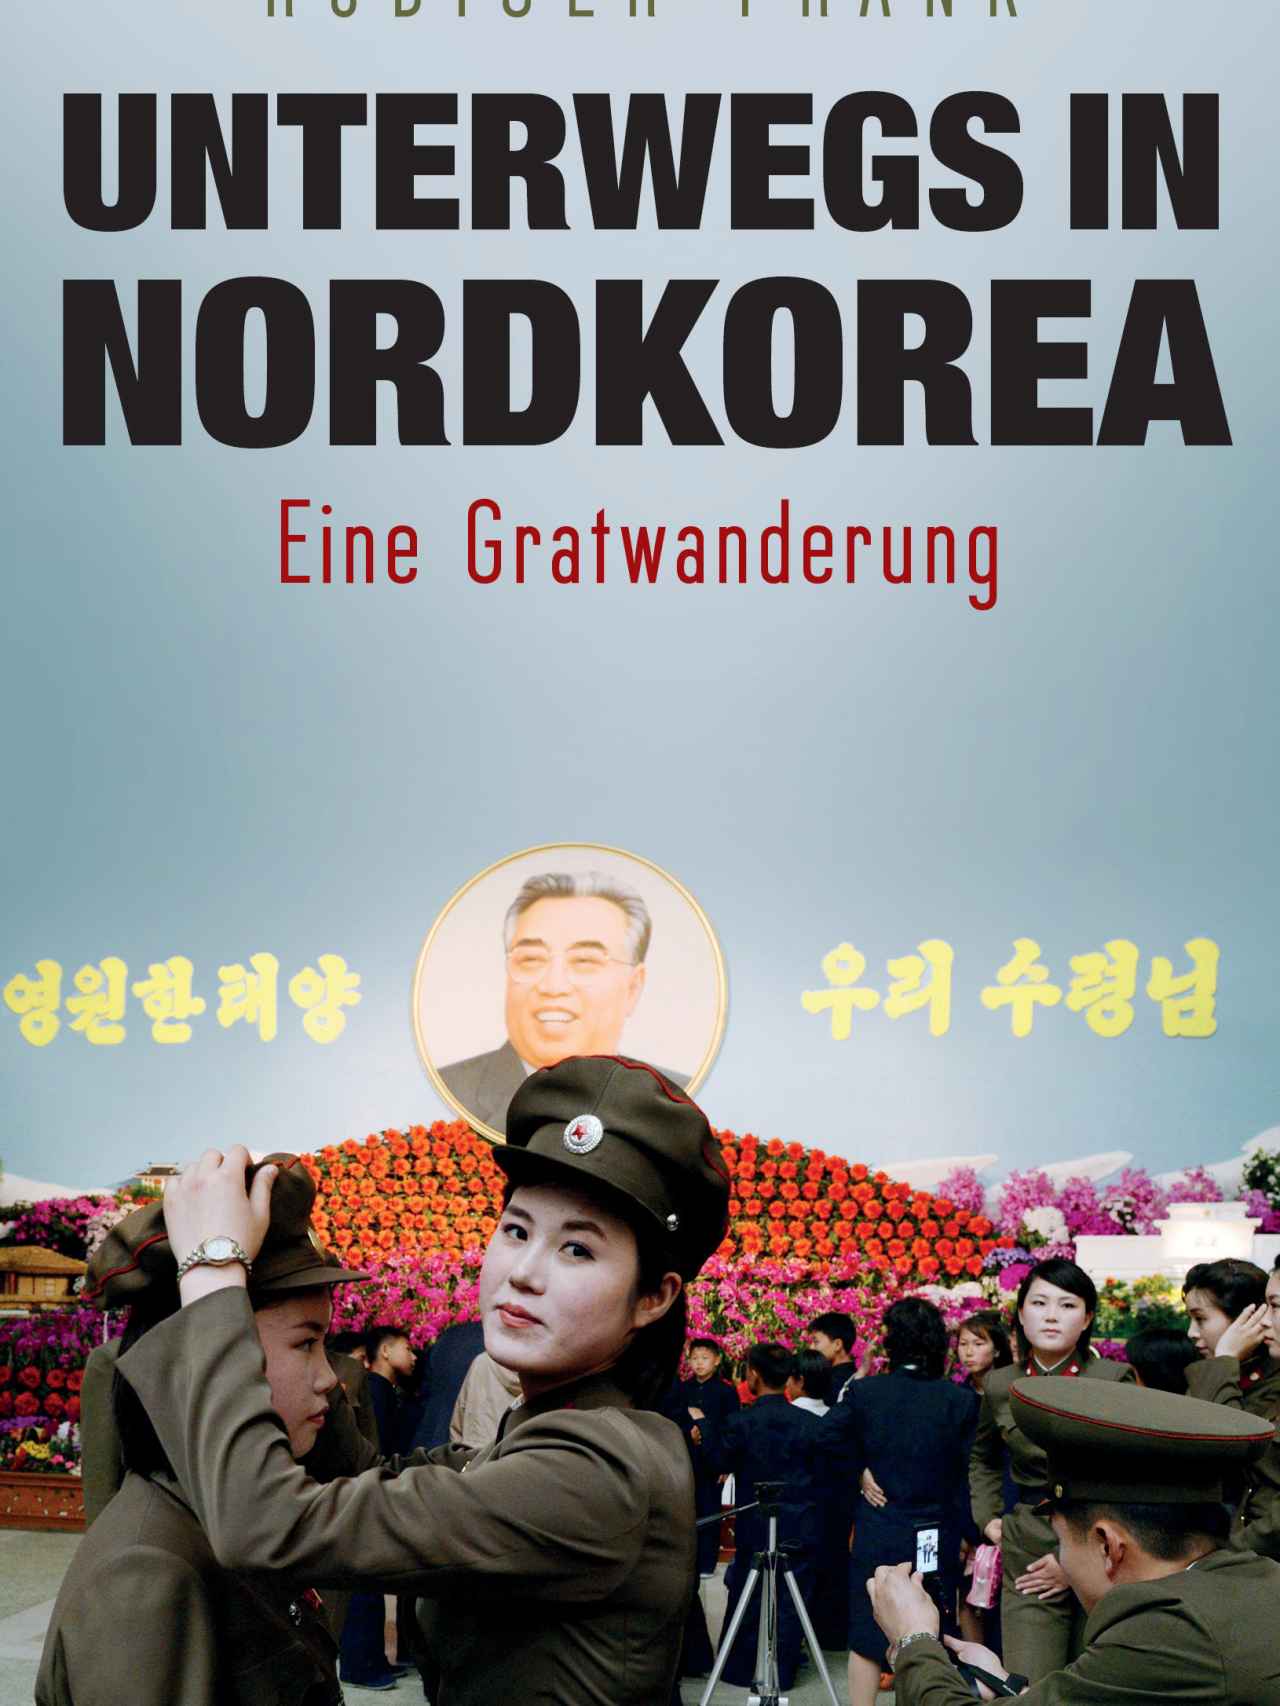 Portada del libro 'De paseo en Corea del Norte', de Rüdiger Frank.